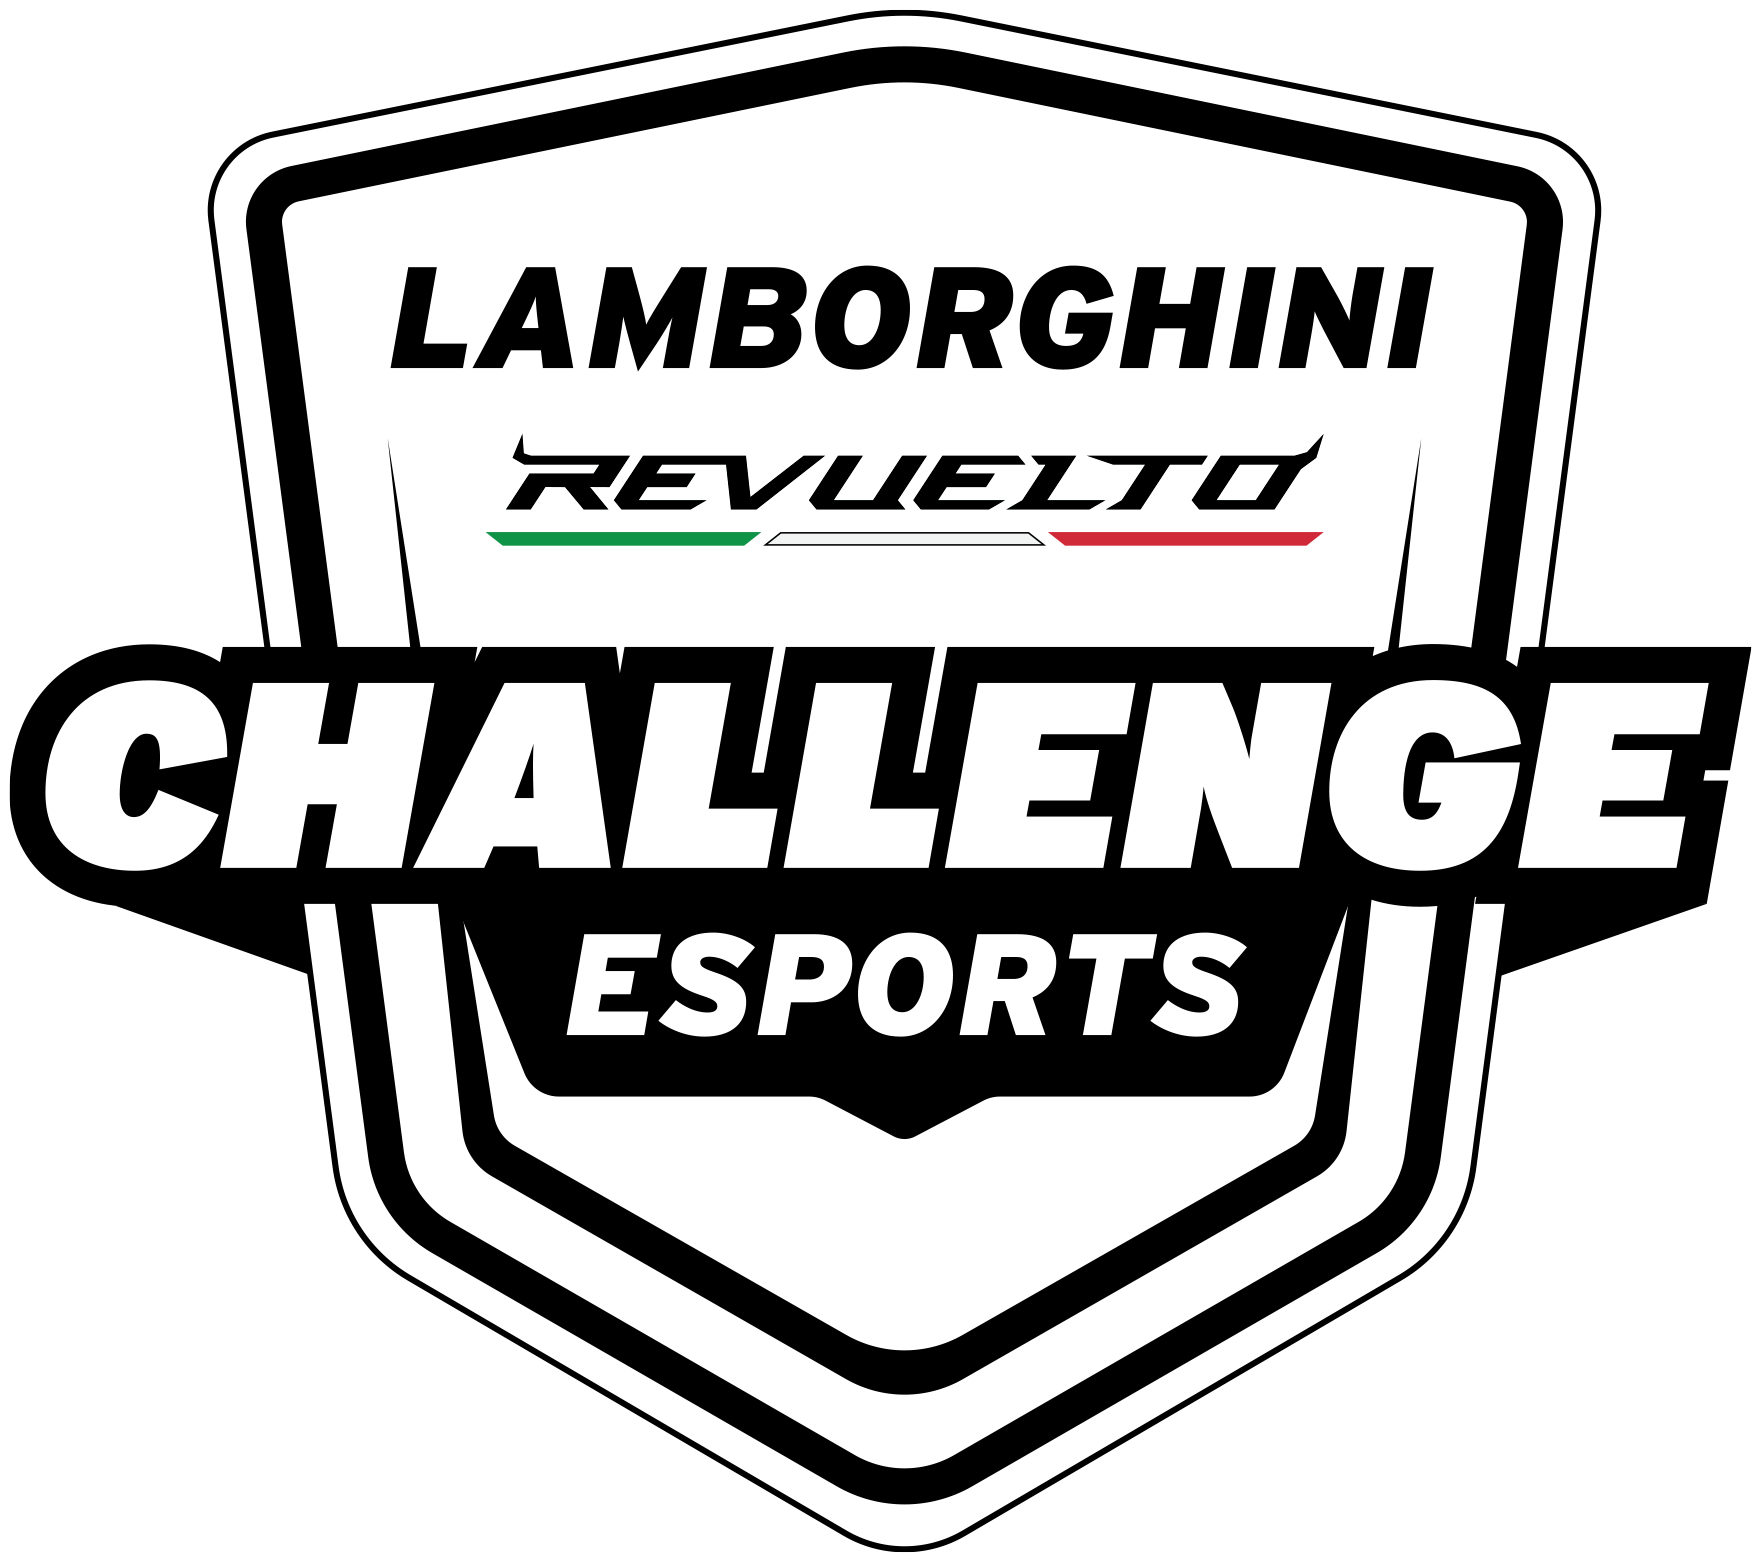 Lamborghini Revuelto Challenge